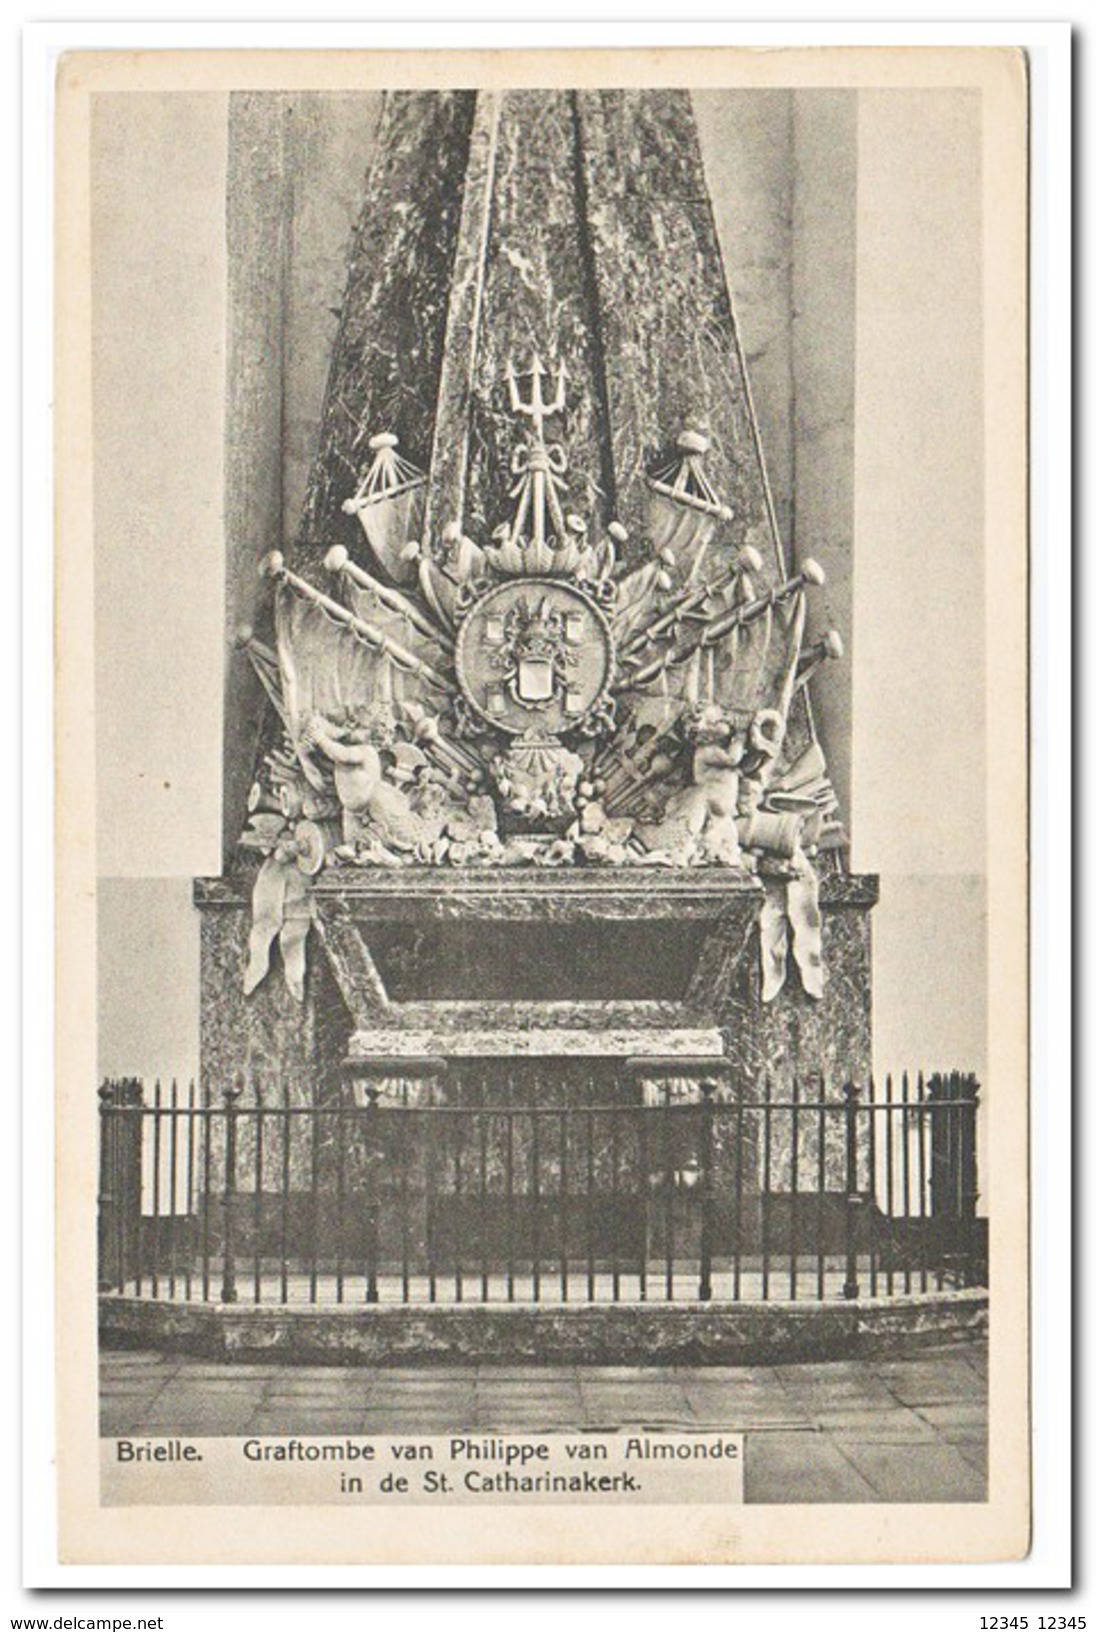 Brielle, Graftombe Van Philippe Van Almonde In De St. Catharinakerk - Brielle